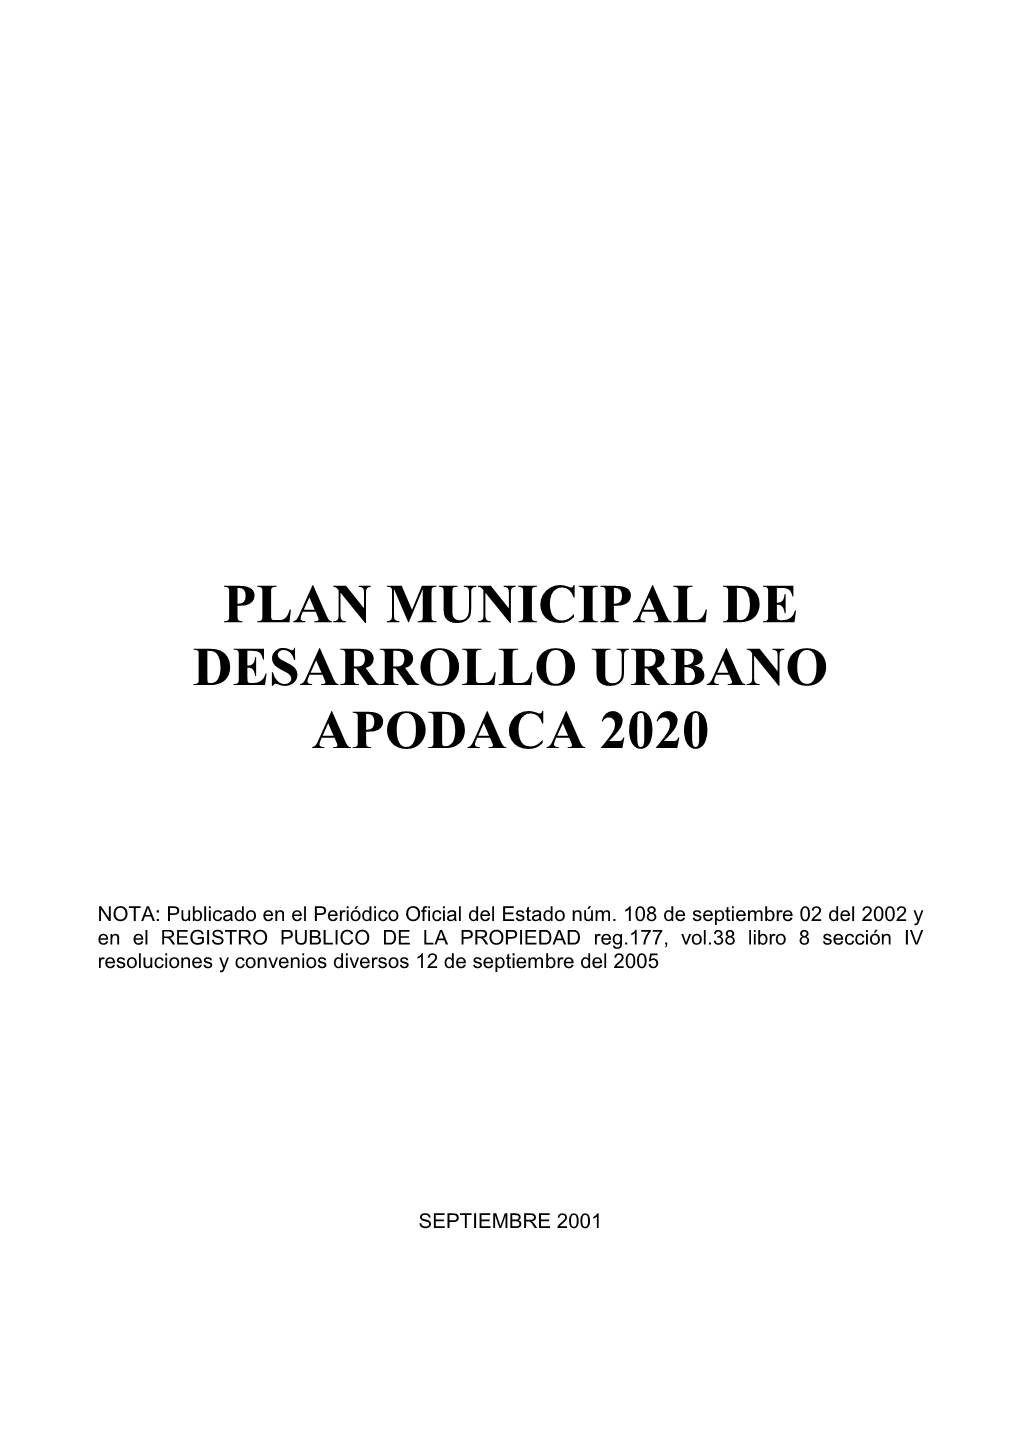 Plan Municipal De Desarrollo Urbano Apodaca 2020”, Esperando Que En Forma Unánime El Pueblo De Apodaca, El H